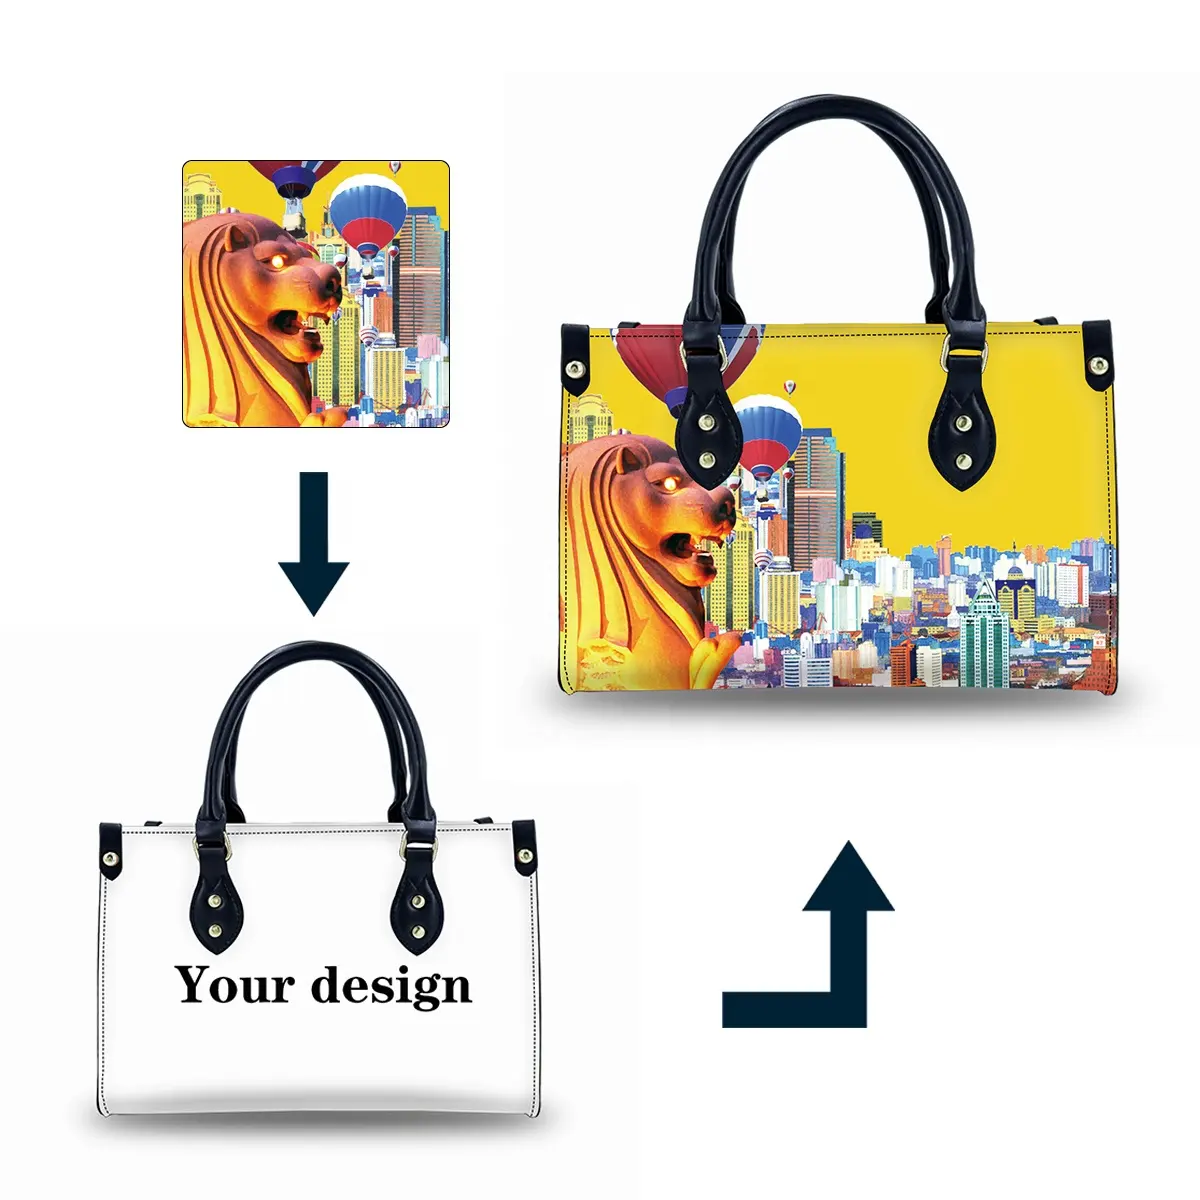 Baru disesuaikan Fashion belanja tas Tote kuning desain terbaru wanita tas tangan kulit tas ibu Tote